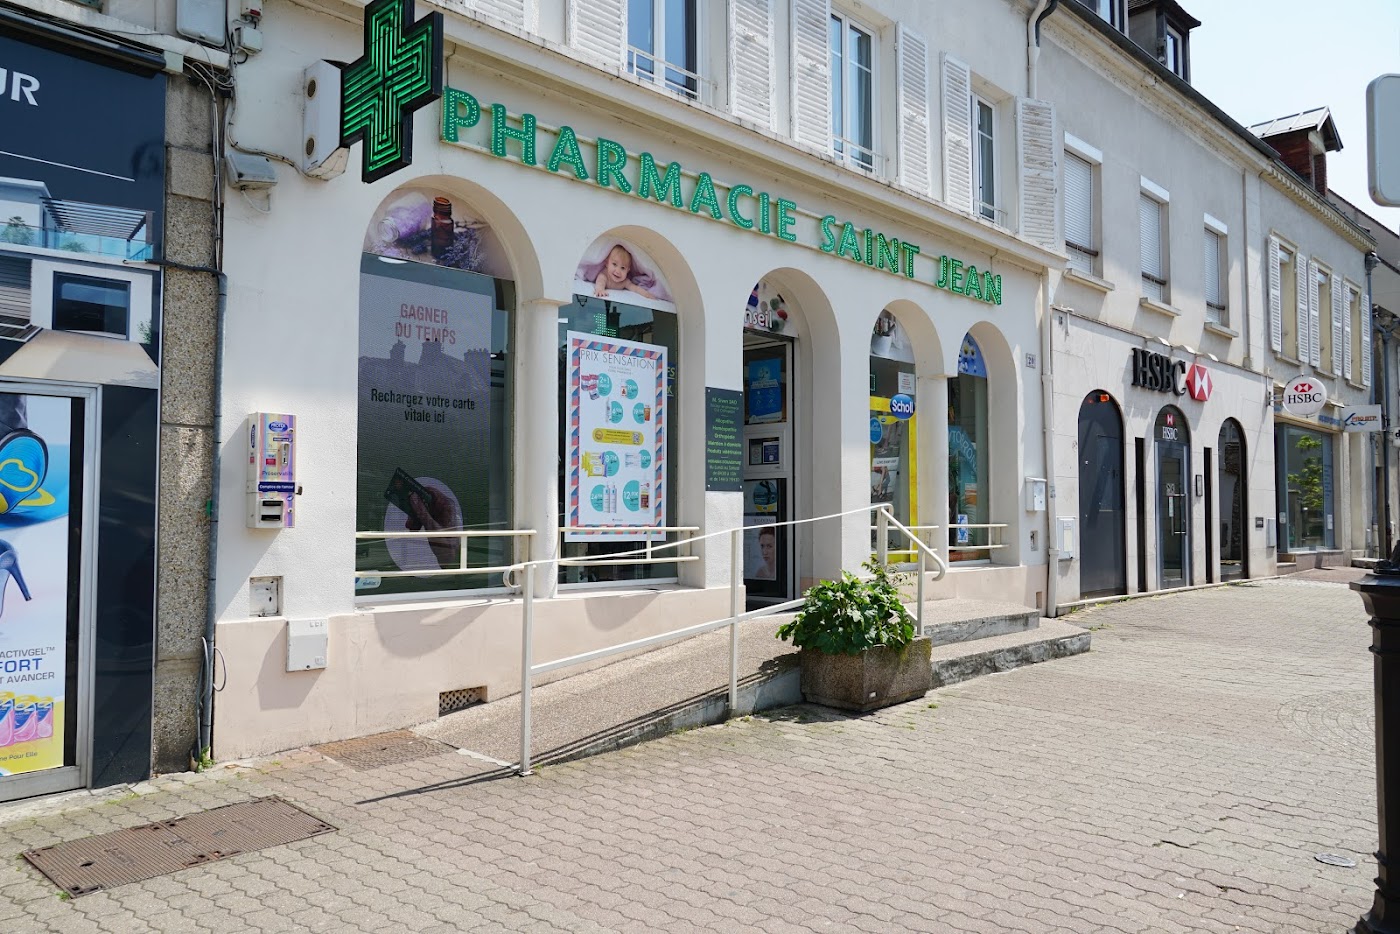 Grande Pharmacie Saint Jean